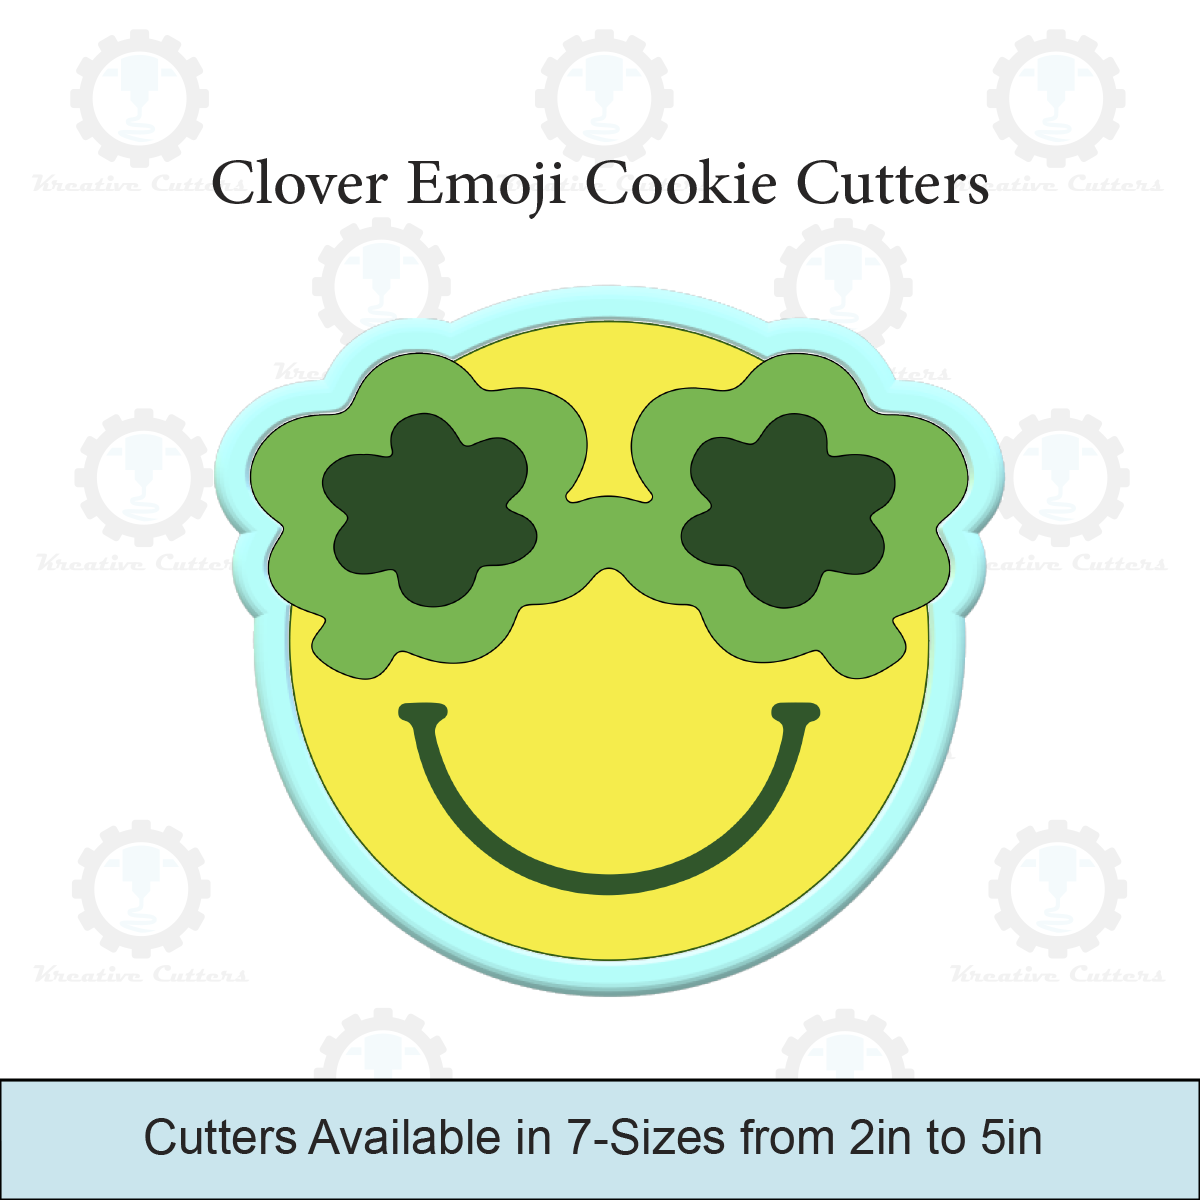 Clover Emoji Cookie Cutters